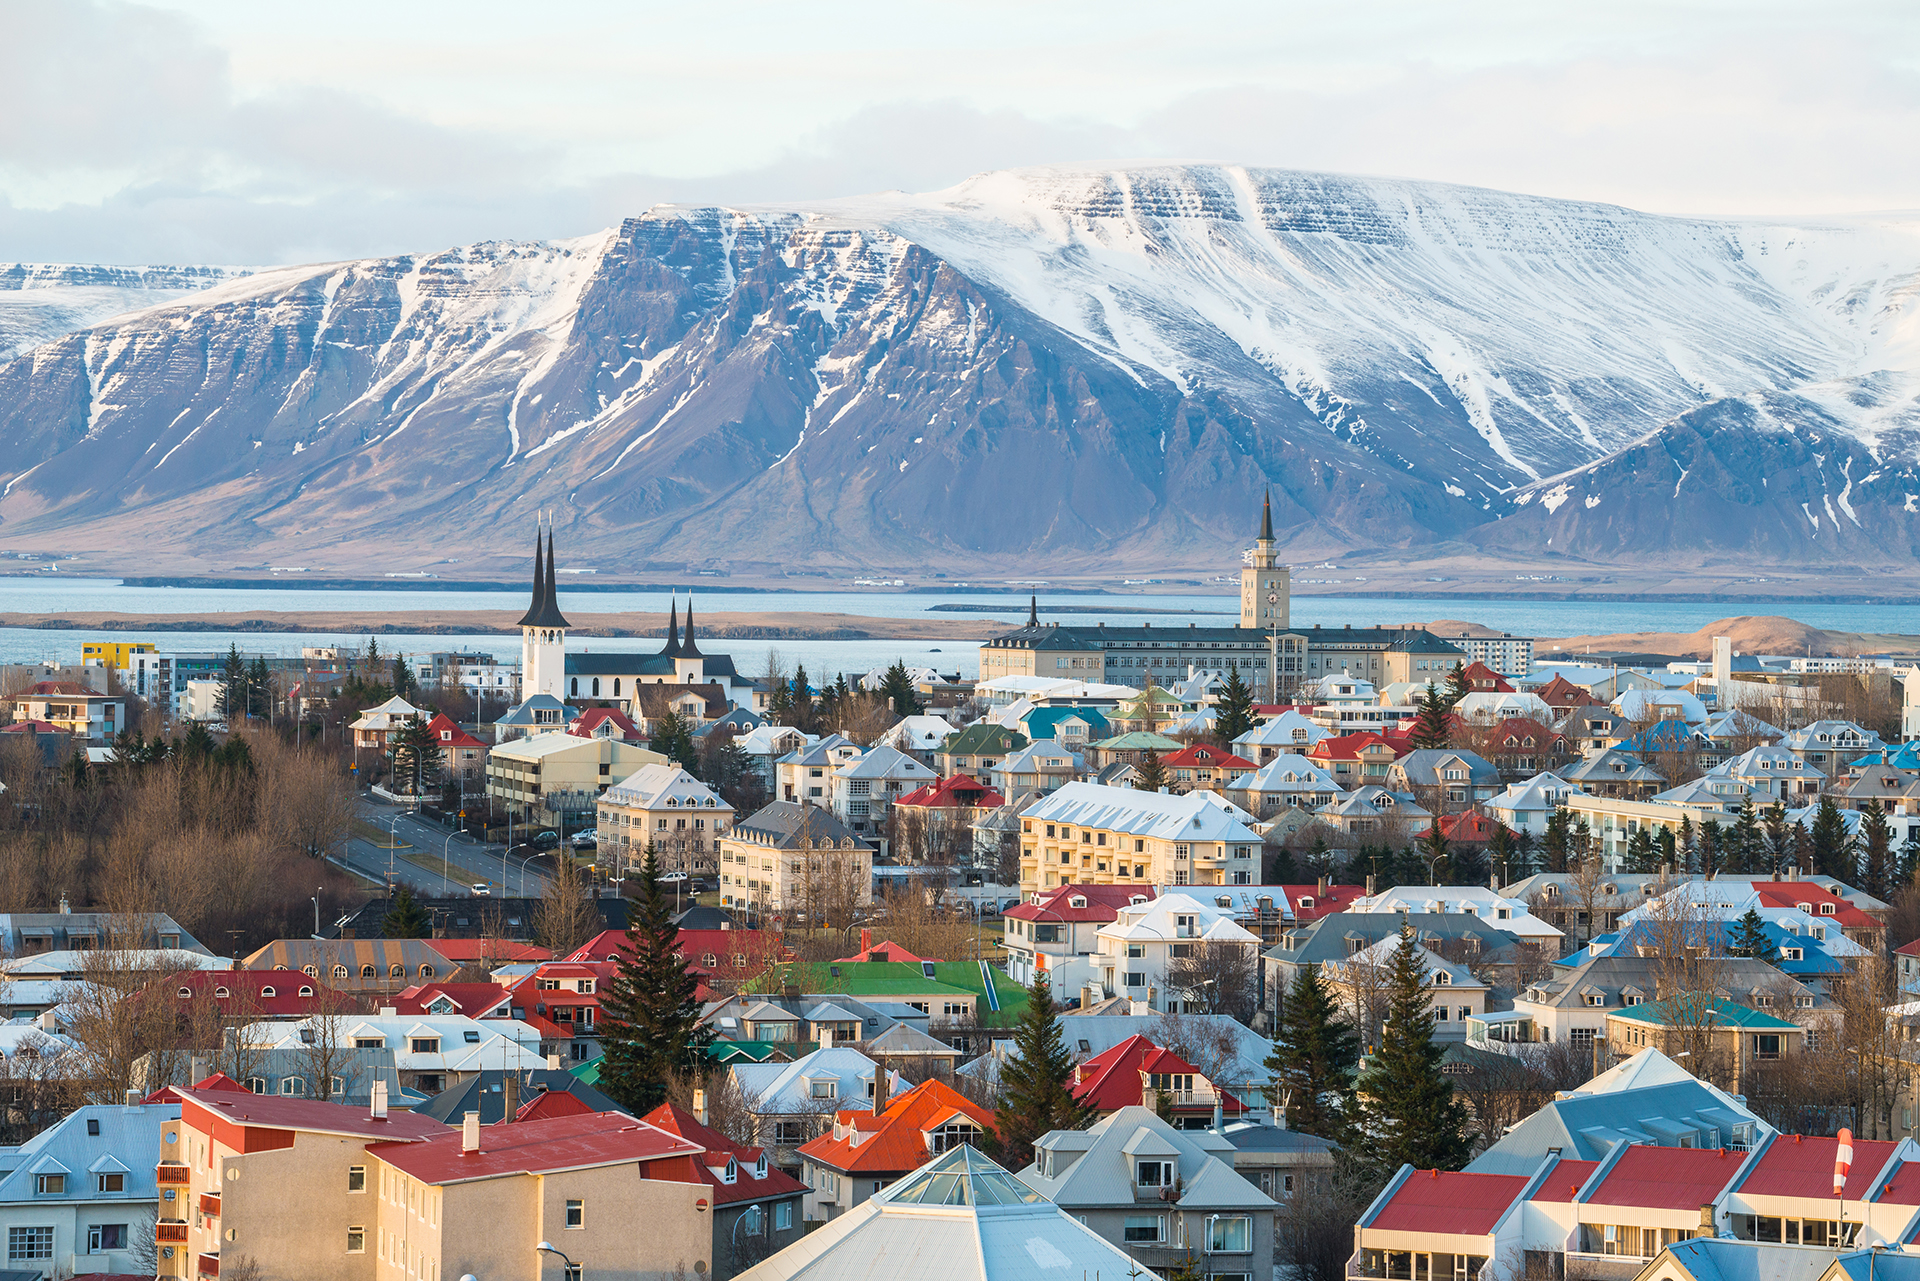 Islandia logró contener la COVID-19 apenas comenzó la pandemia gracias al rastreo de infecciones y contactos: solo un 1% de la población cayó enferma (Shutterstock)